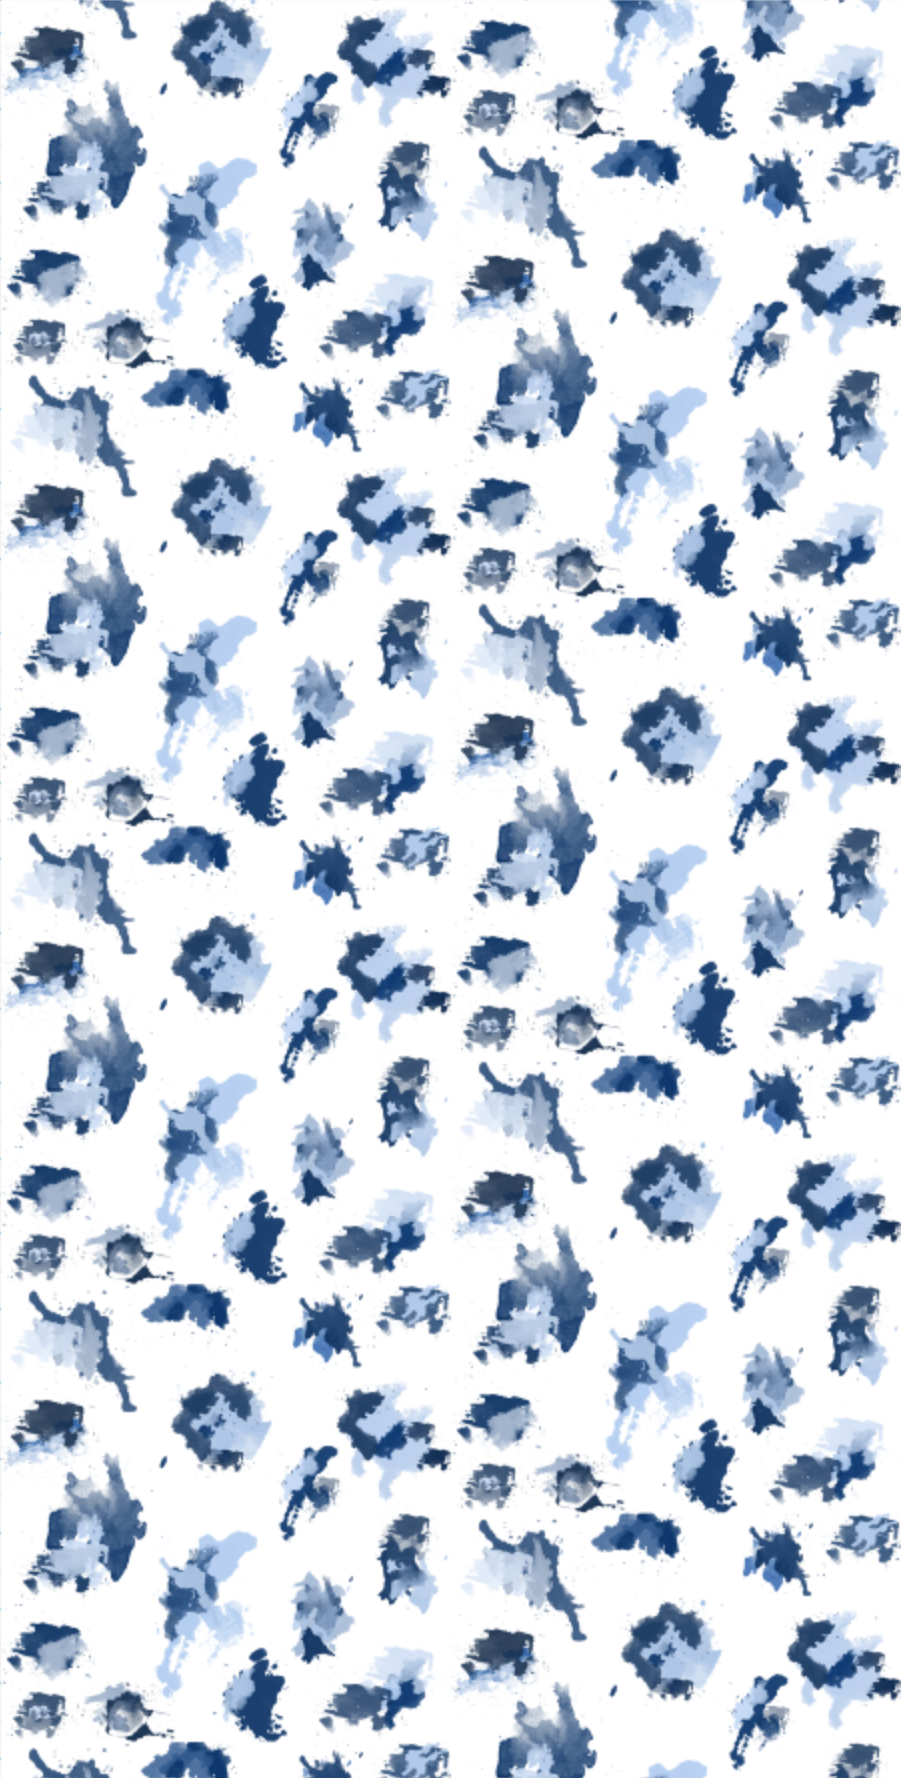 blue leopard print wallpaper, blue paint splotch wallpaper, blue paint daubs wallpaper, blue powder bathroom wallpaper, blue cheetah print wallpaper